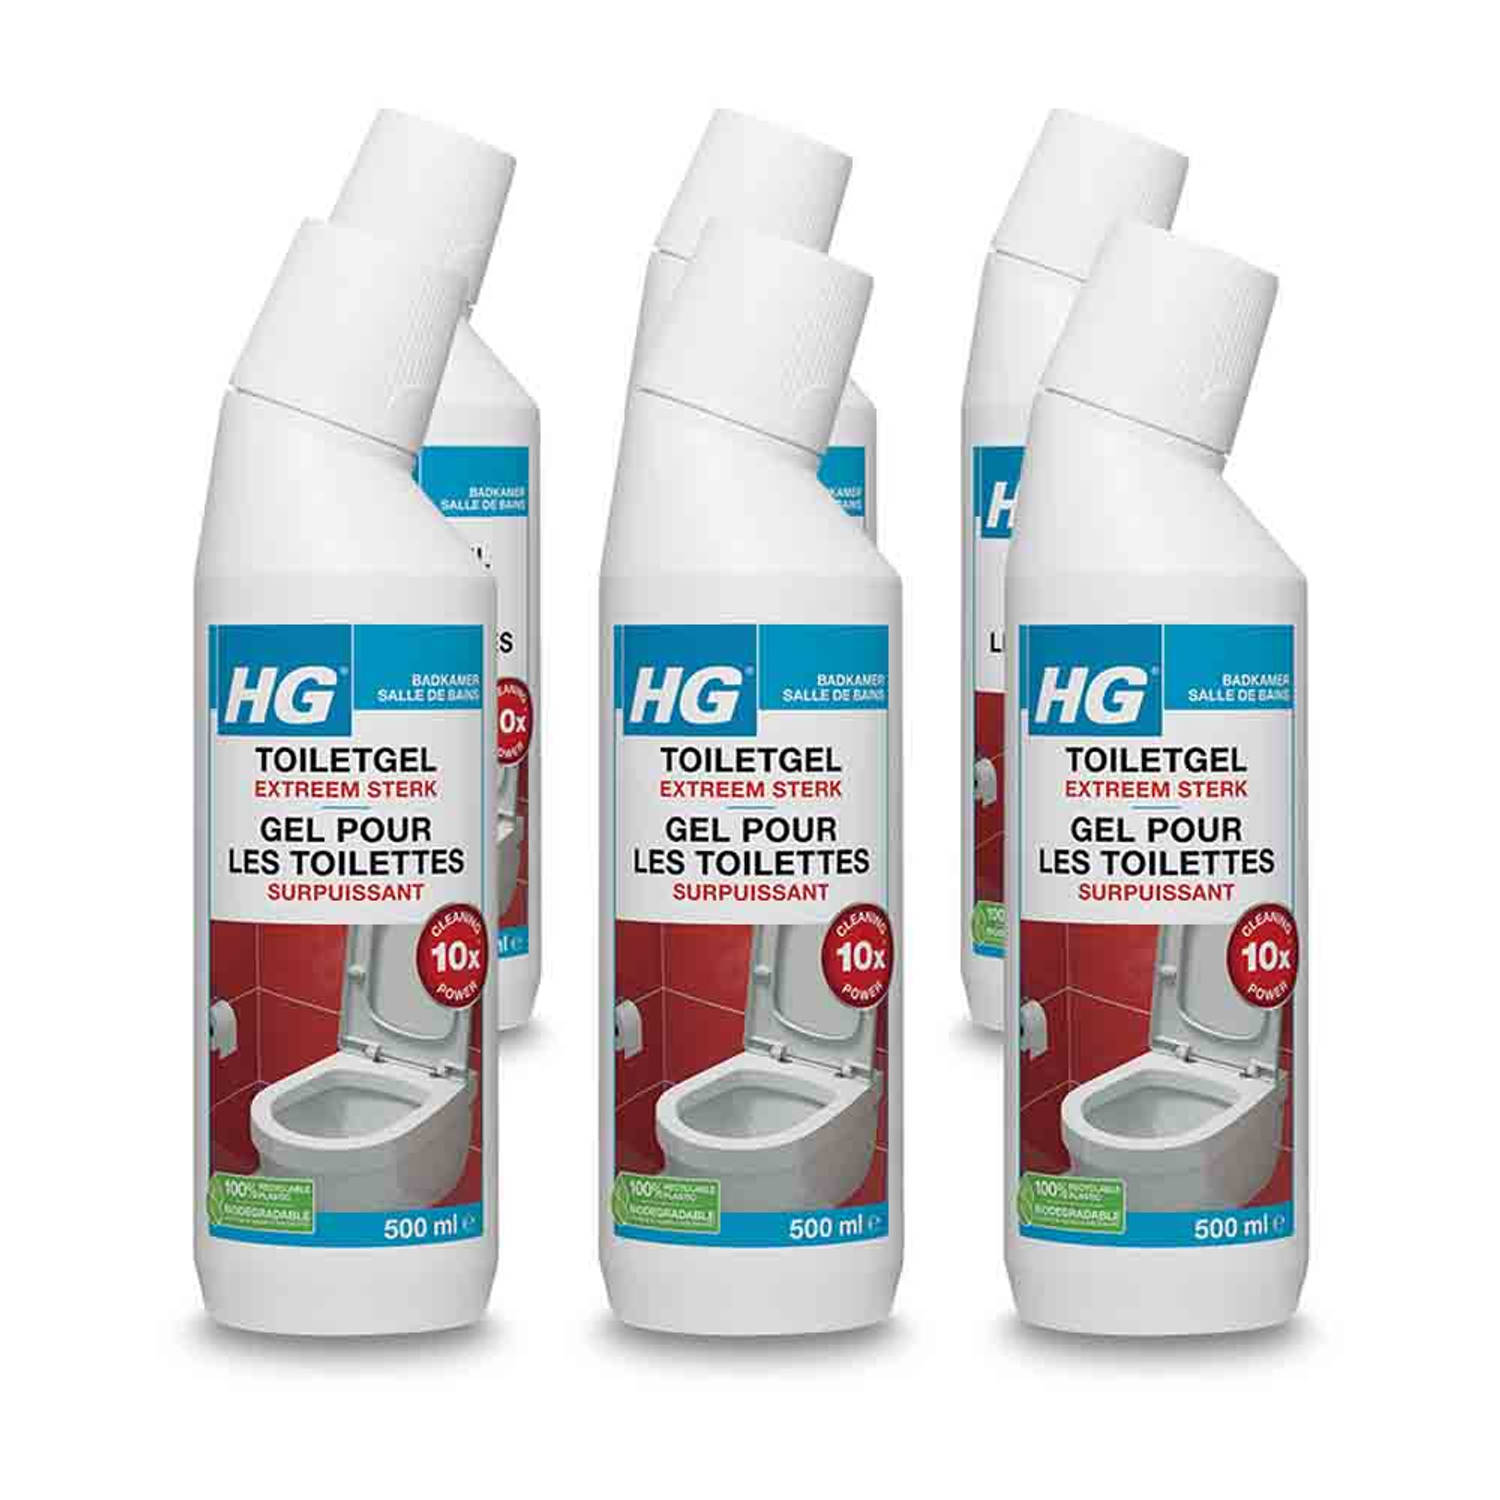 HG toiletgel extra sterk 500 ml - 6 stuks